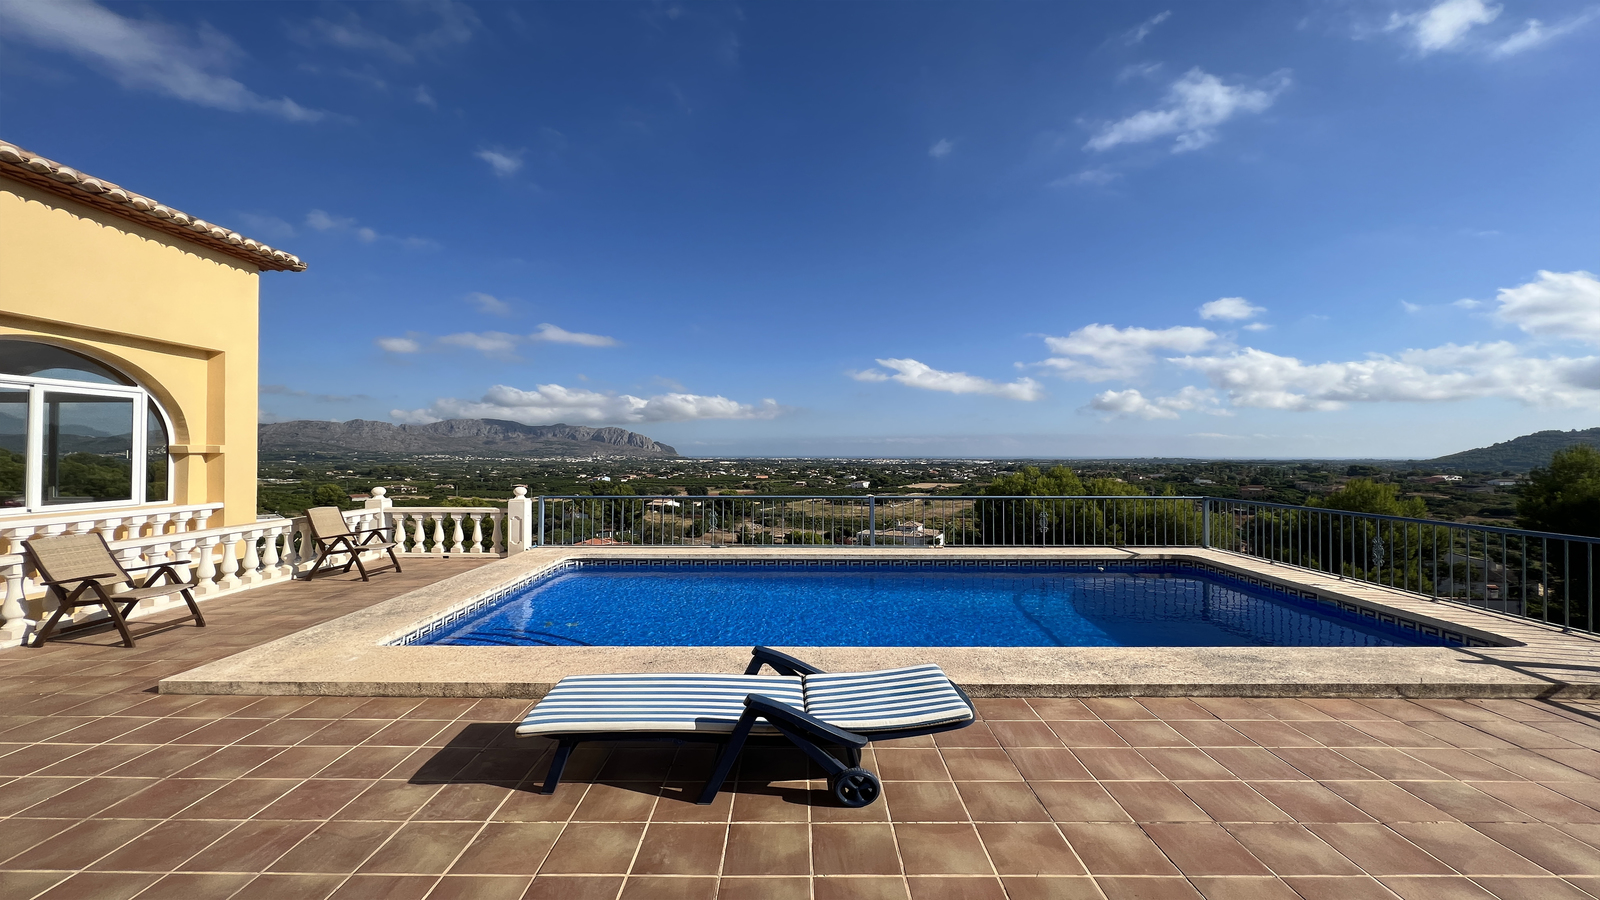 Mooie villa met 3 slaapkamers, zwembad met panoramisch uitzicht, BBQ-plaats, parkeerplaats.